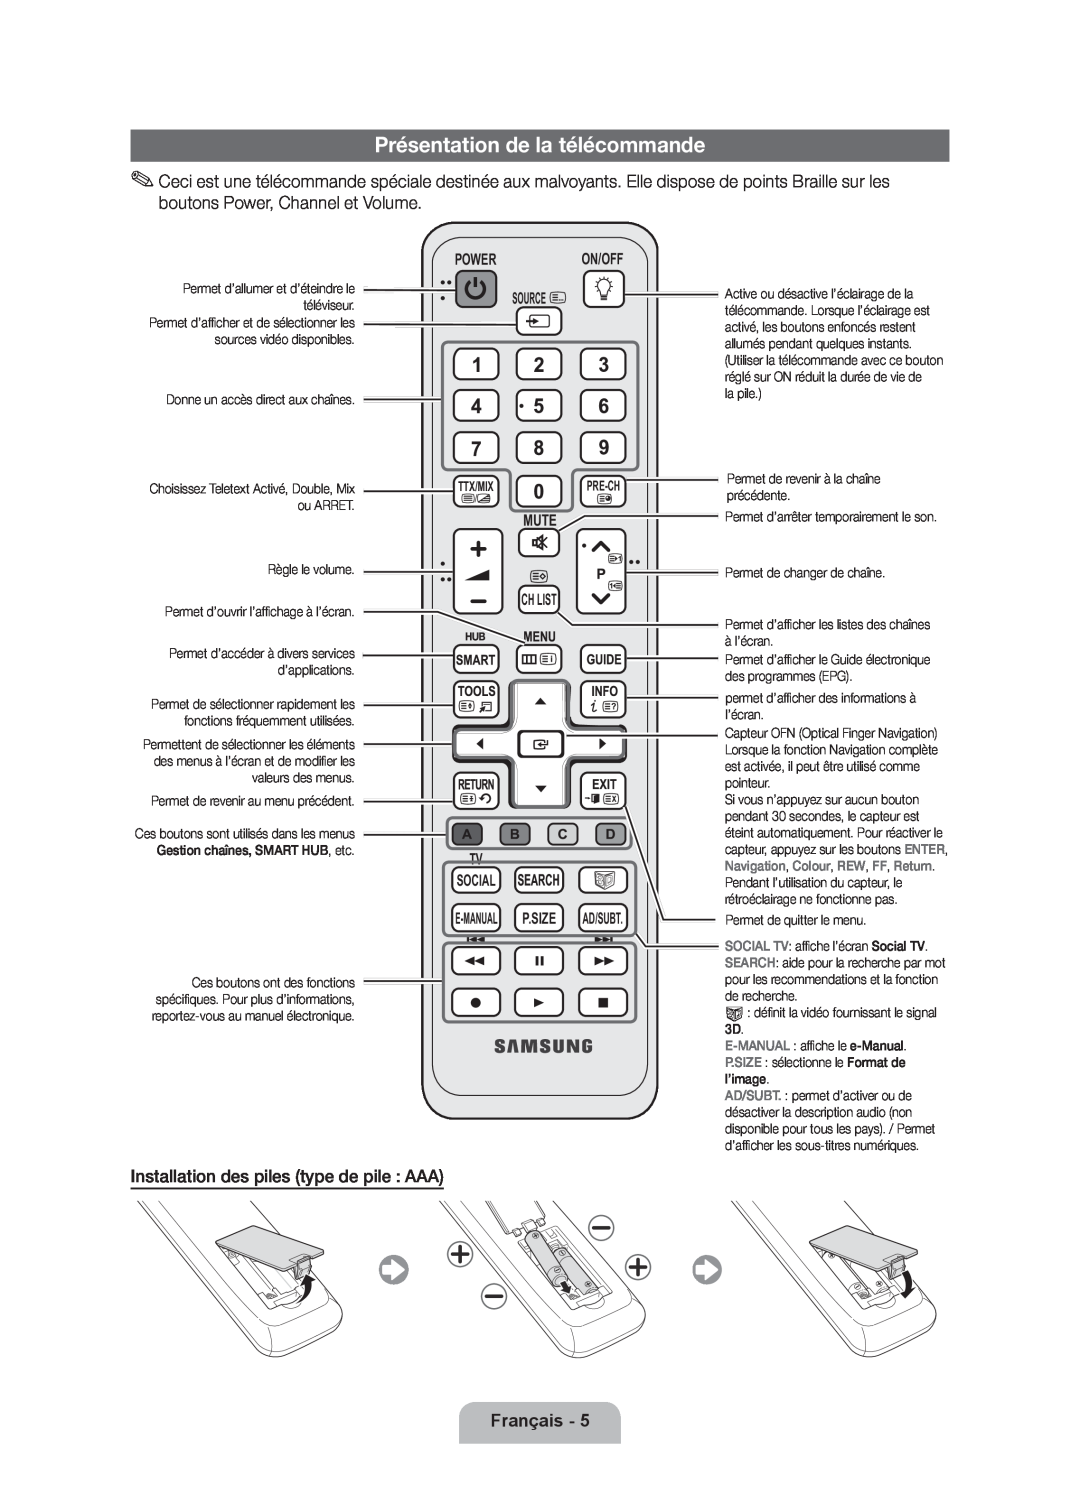 Samsung UE55D7000LSXZF manual Présentation de la télécommande, Français, Power On/Off Source, Mute Ch List, P.Size, Ad/Subt 